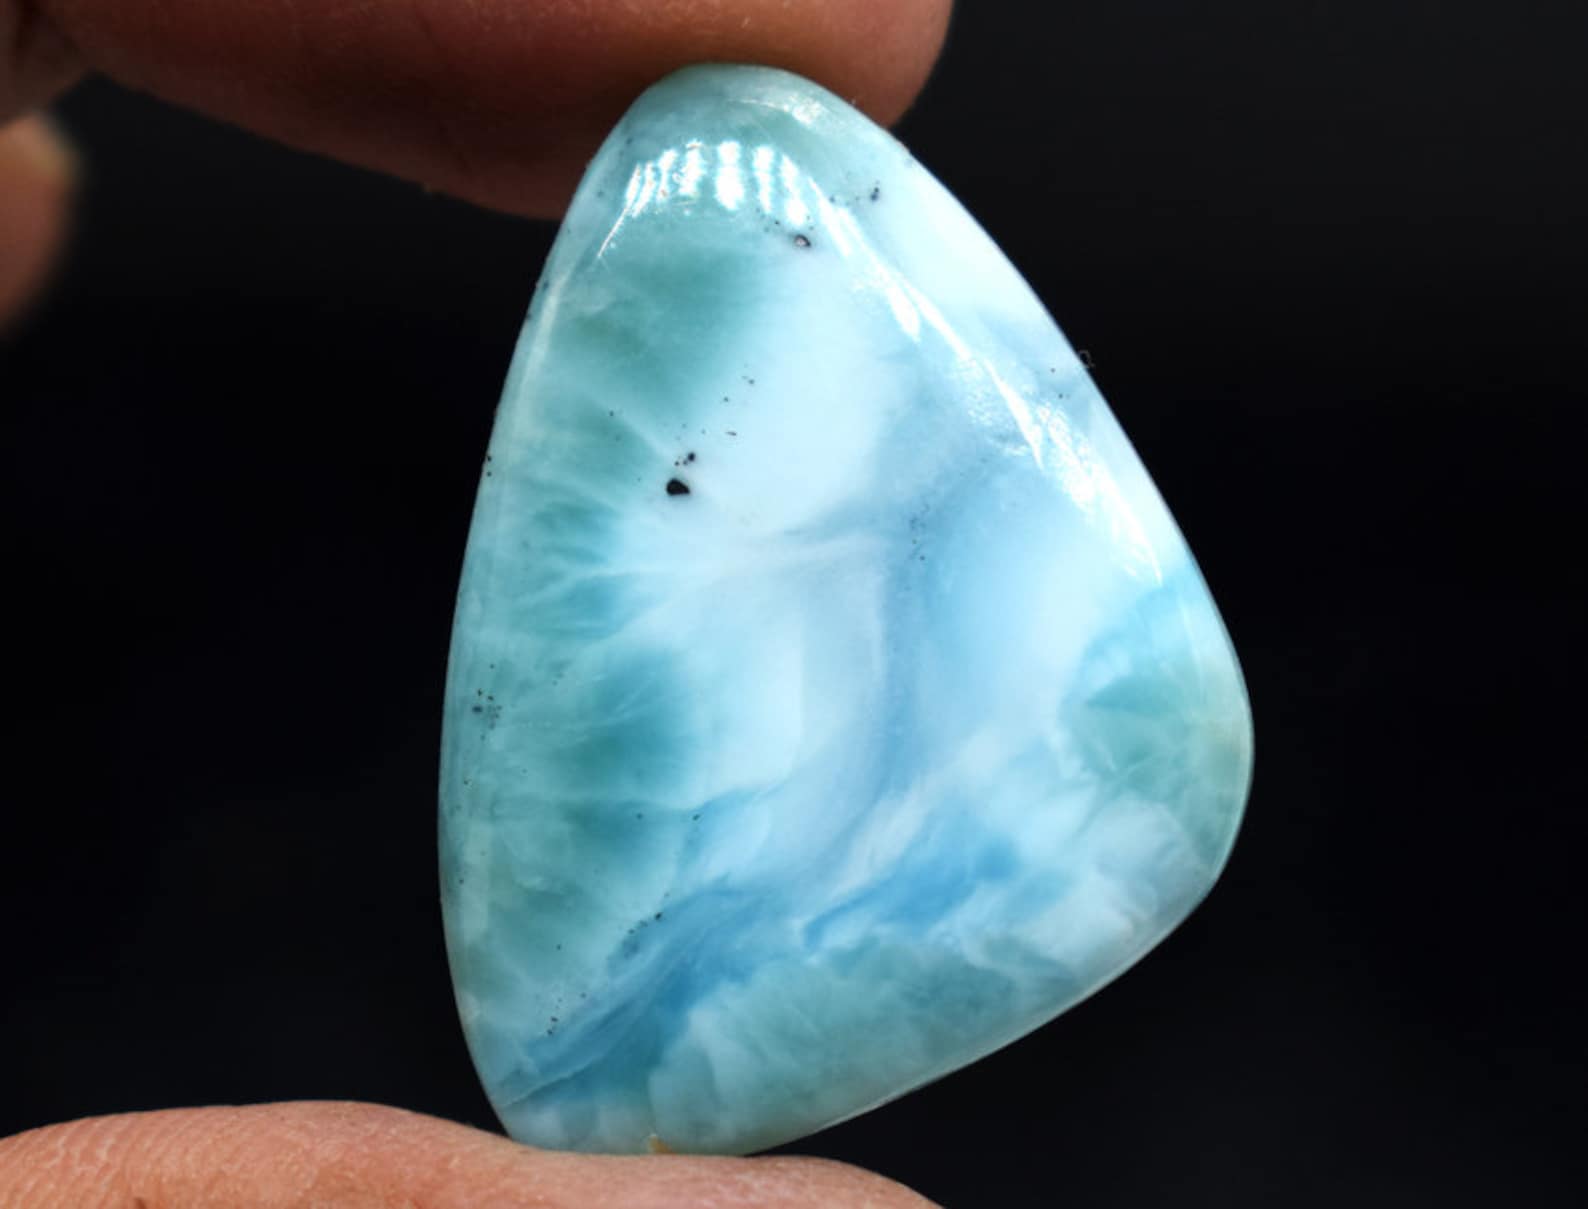 Genuine Blue Larimar Gemstone Beautiful Larimar Stone Etsy Uk